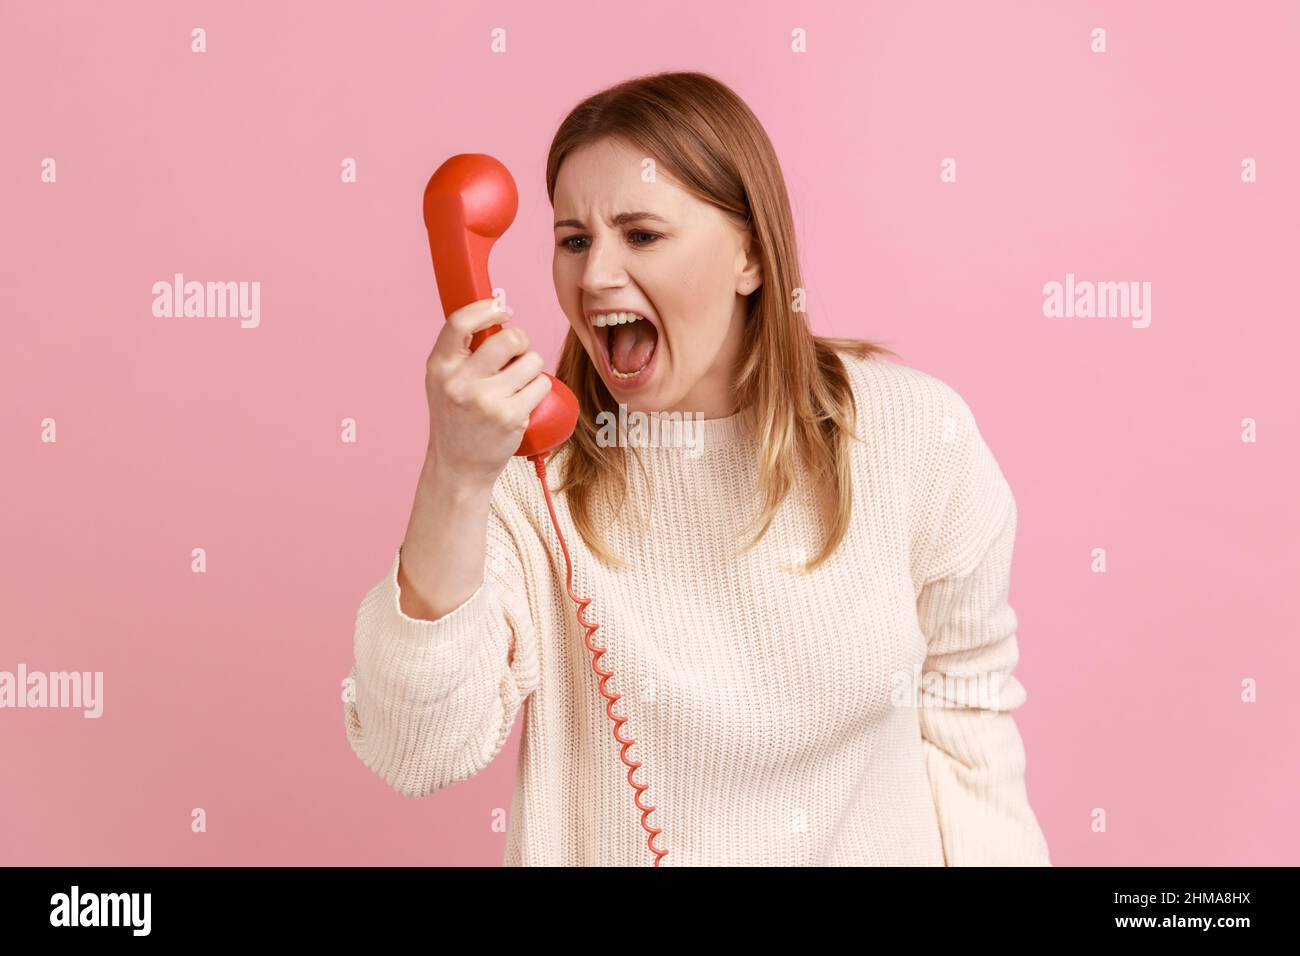 Portrait einer verärgerten blonden Frau, die in den roten Hörer schreit, ein unangenehmes Gespräch führt, Aggression ausdrückt und einen weißen Pullover trägt. Innenaufnahme des Studios isoliert auf rosa Hintergrund. Stockfoto